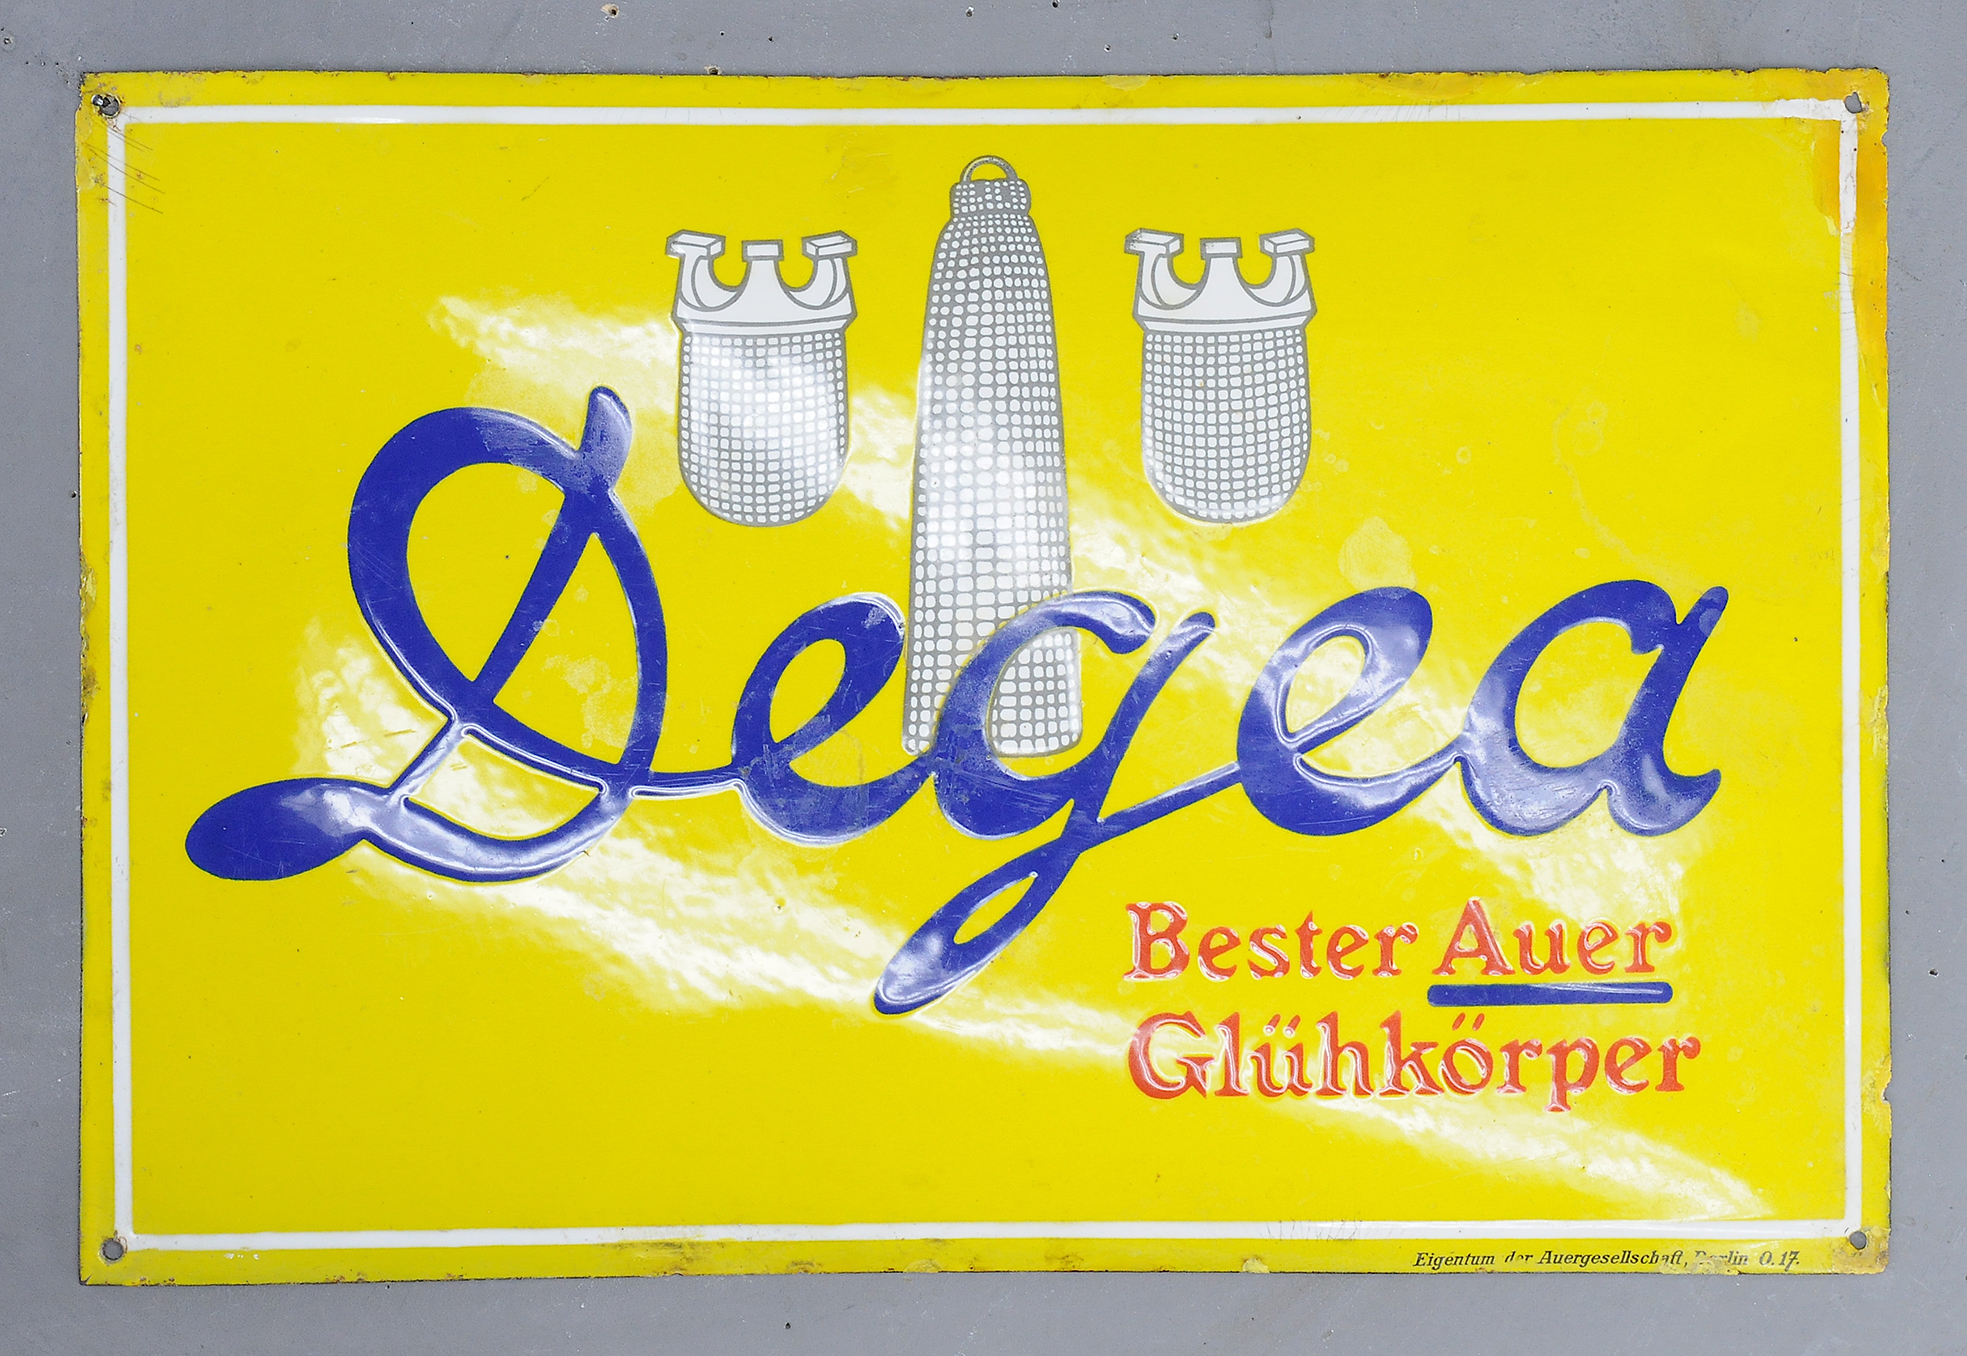 Degea Auer Glühkörper - Image 3 of 3